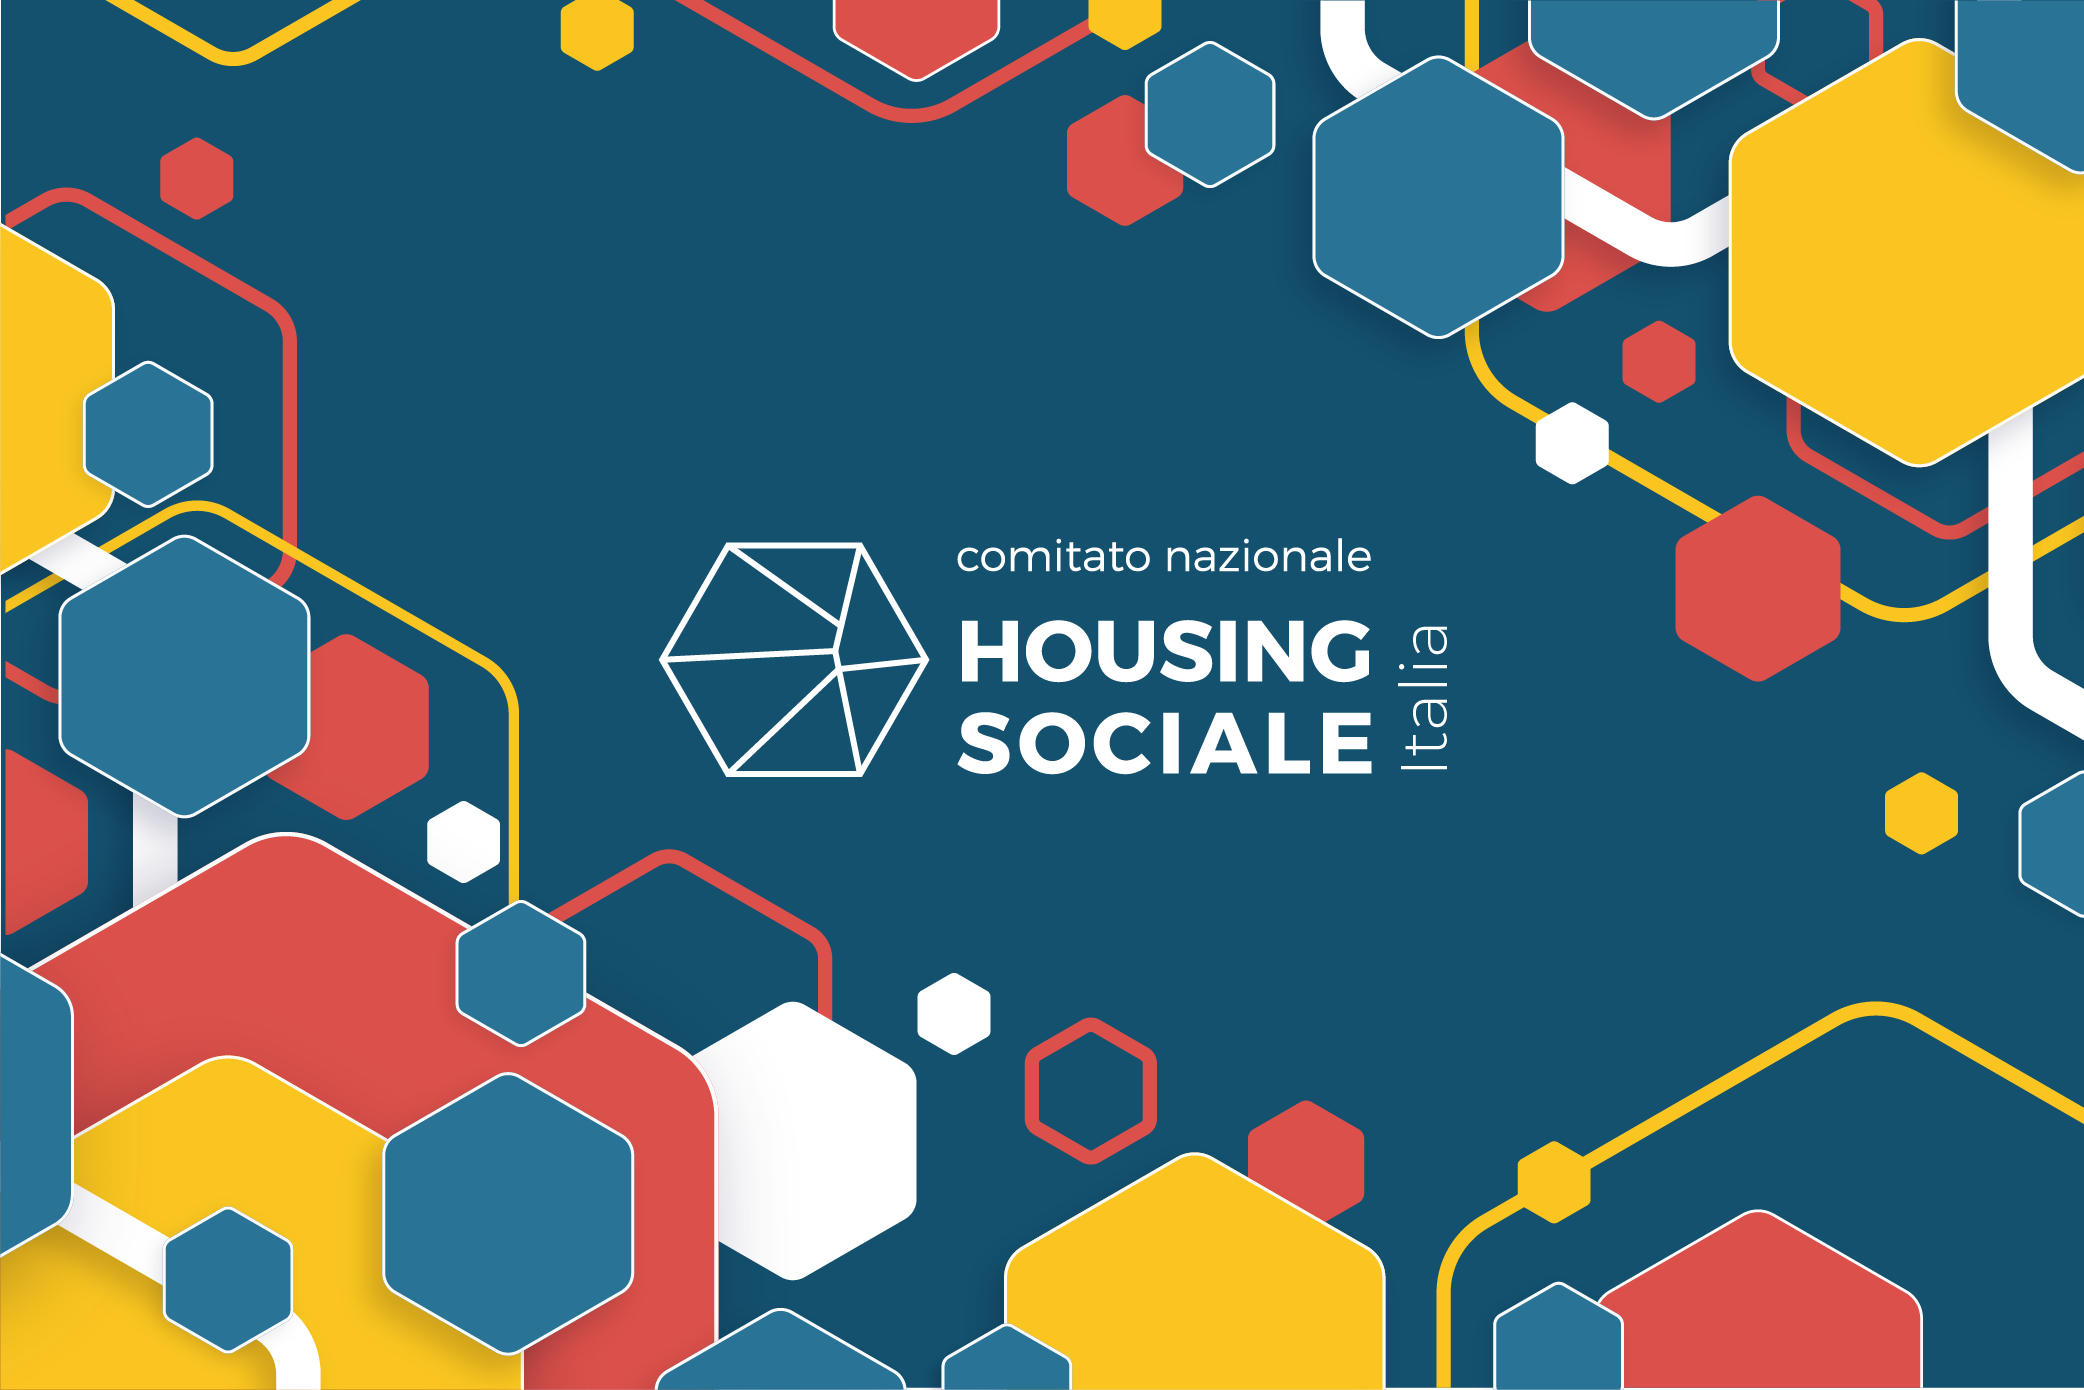 Comitato Nazionale per l’Housing Sociale